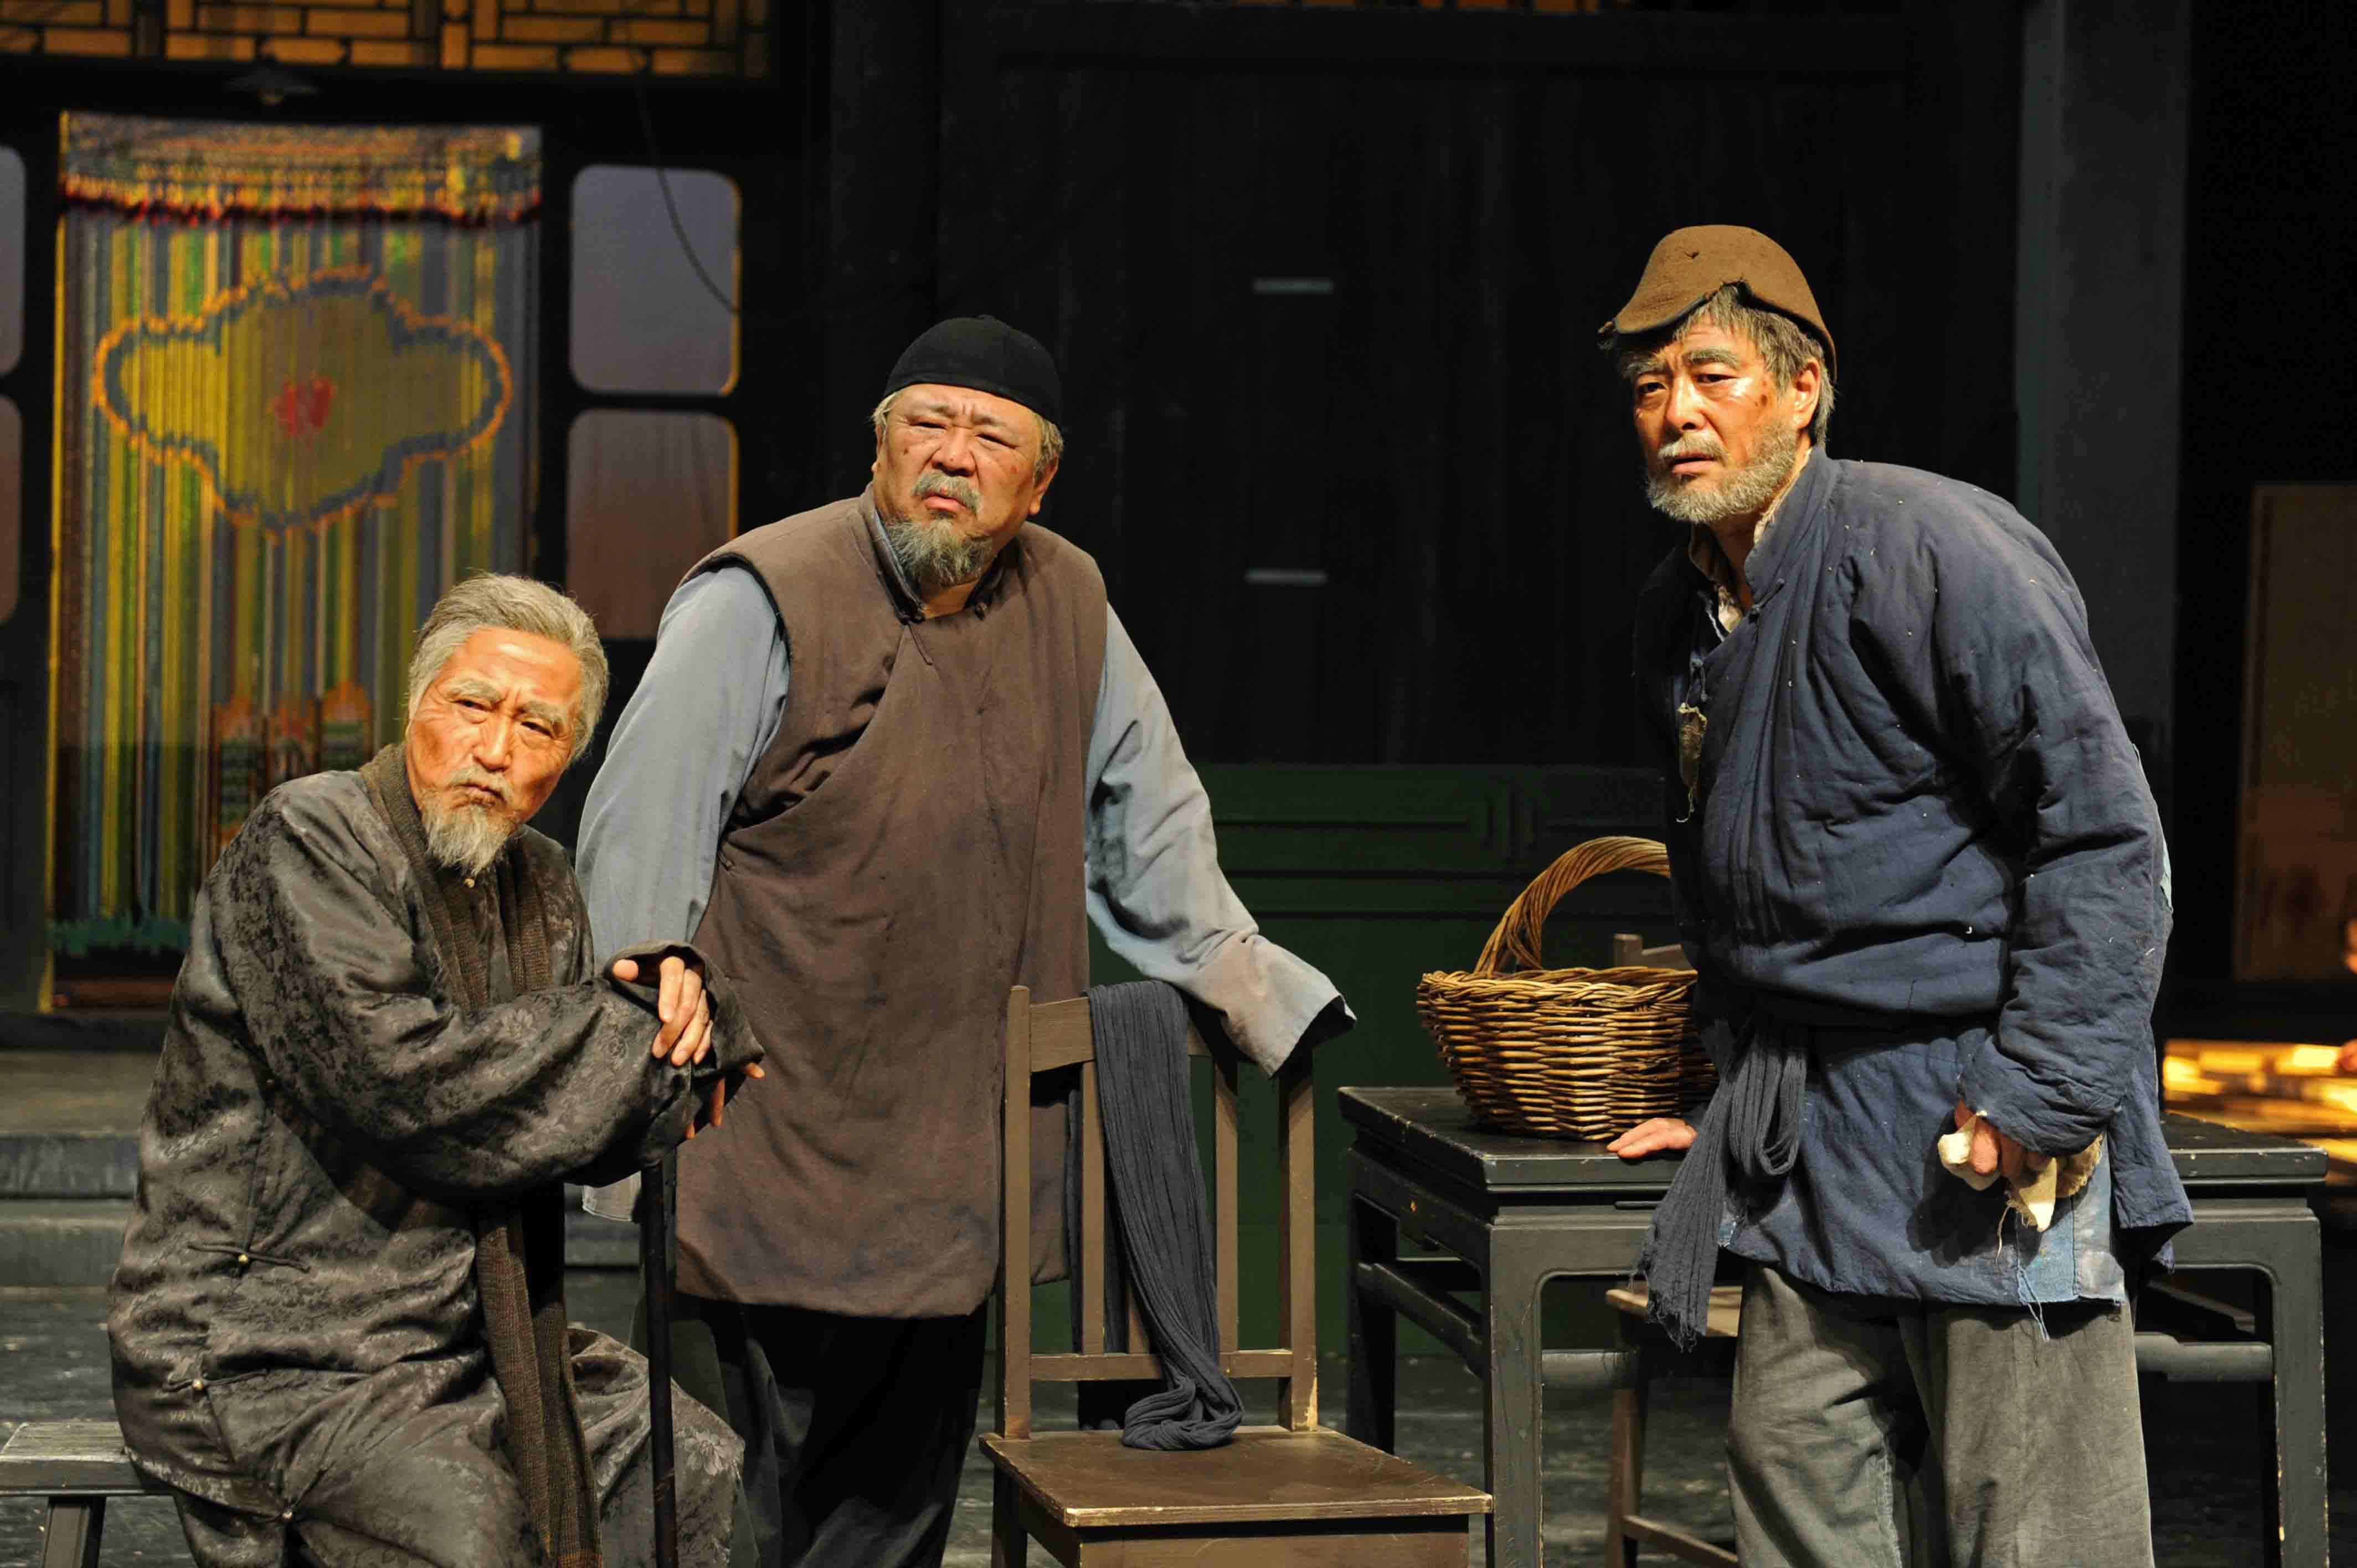 Yang Li Xin, Liang Guan Hua, and Pu Cun Xin in Act III of Teahouse, by Lao She. Photo © Beijing People's Art Theatre.